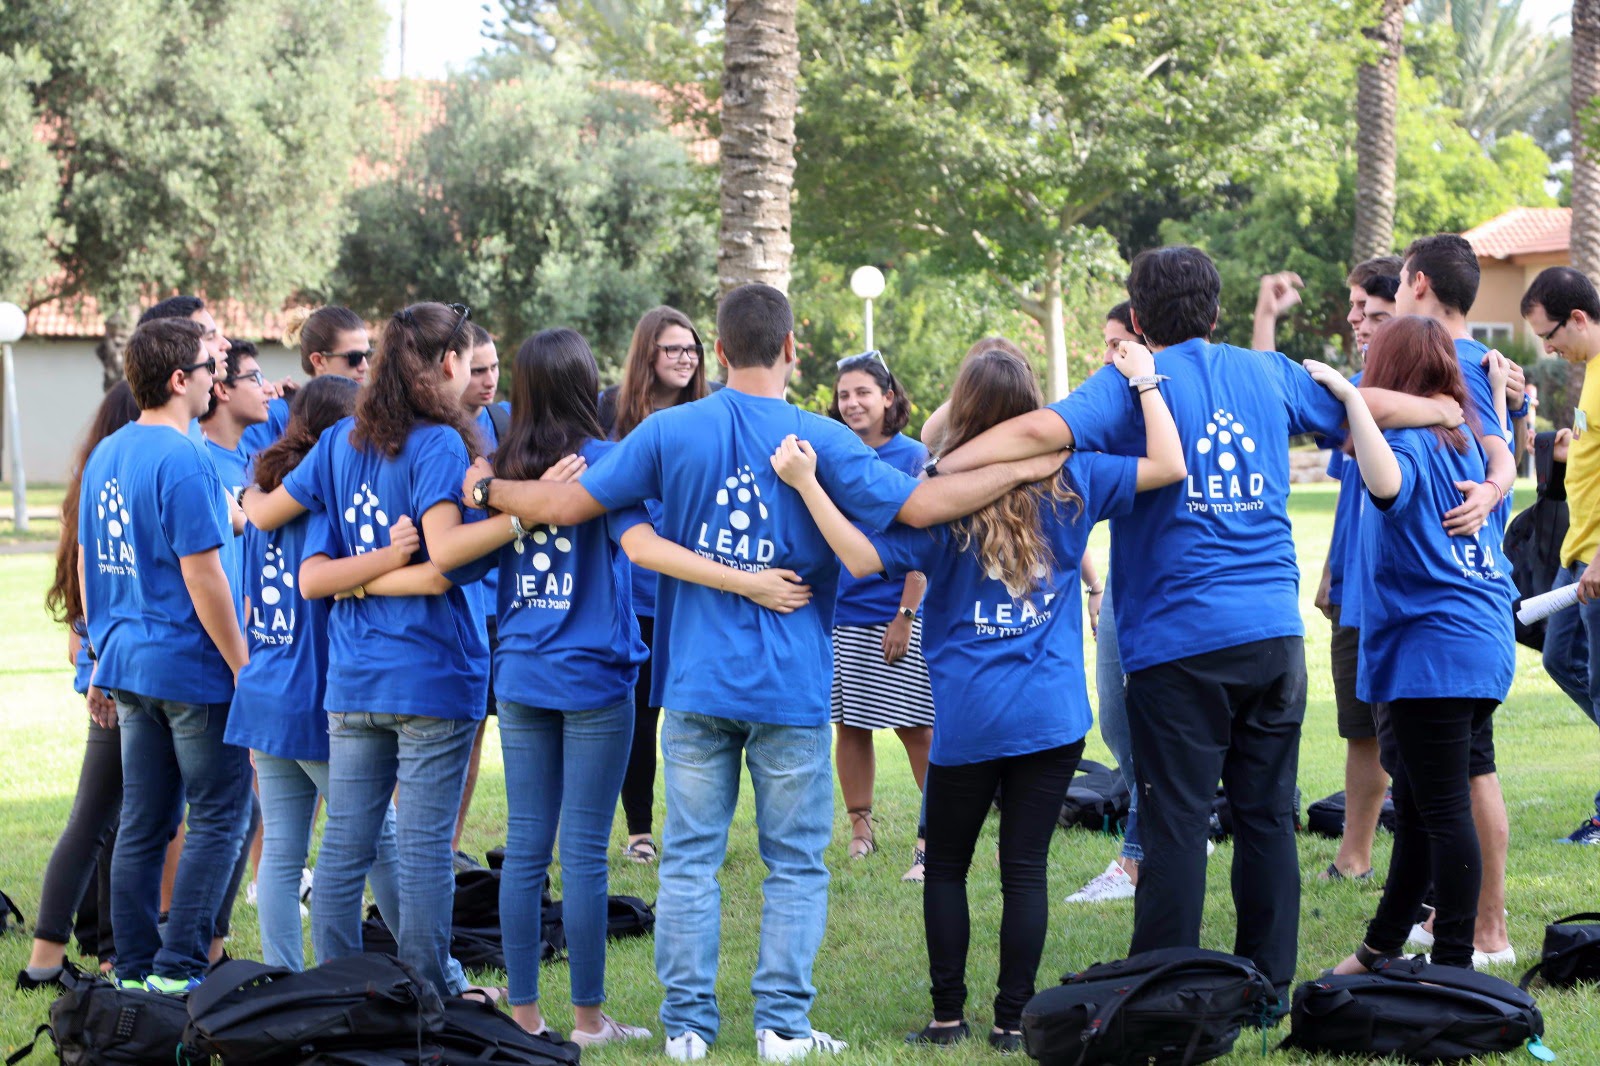 להשפיע, לשנות, להוביל!  צוות LEAD לפיתוח מנהיגות בישראל יפתח בבאר שבע